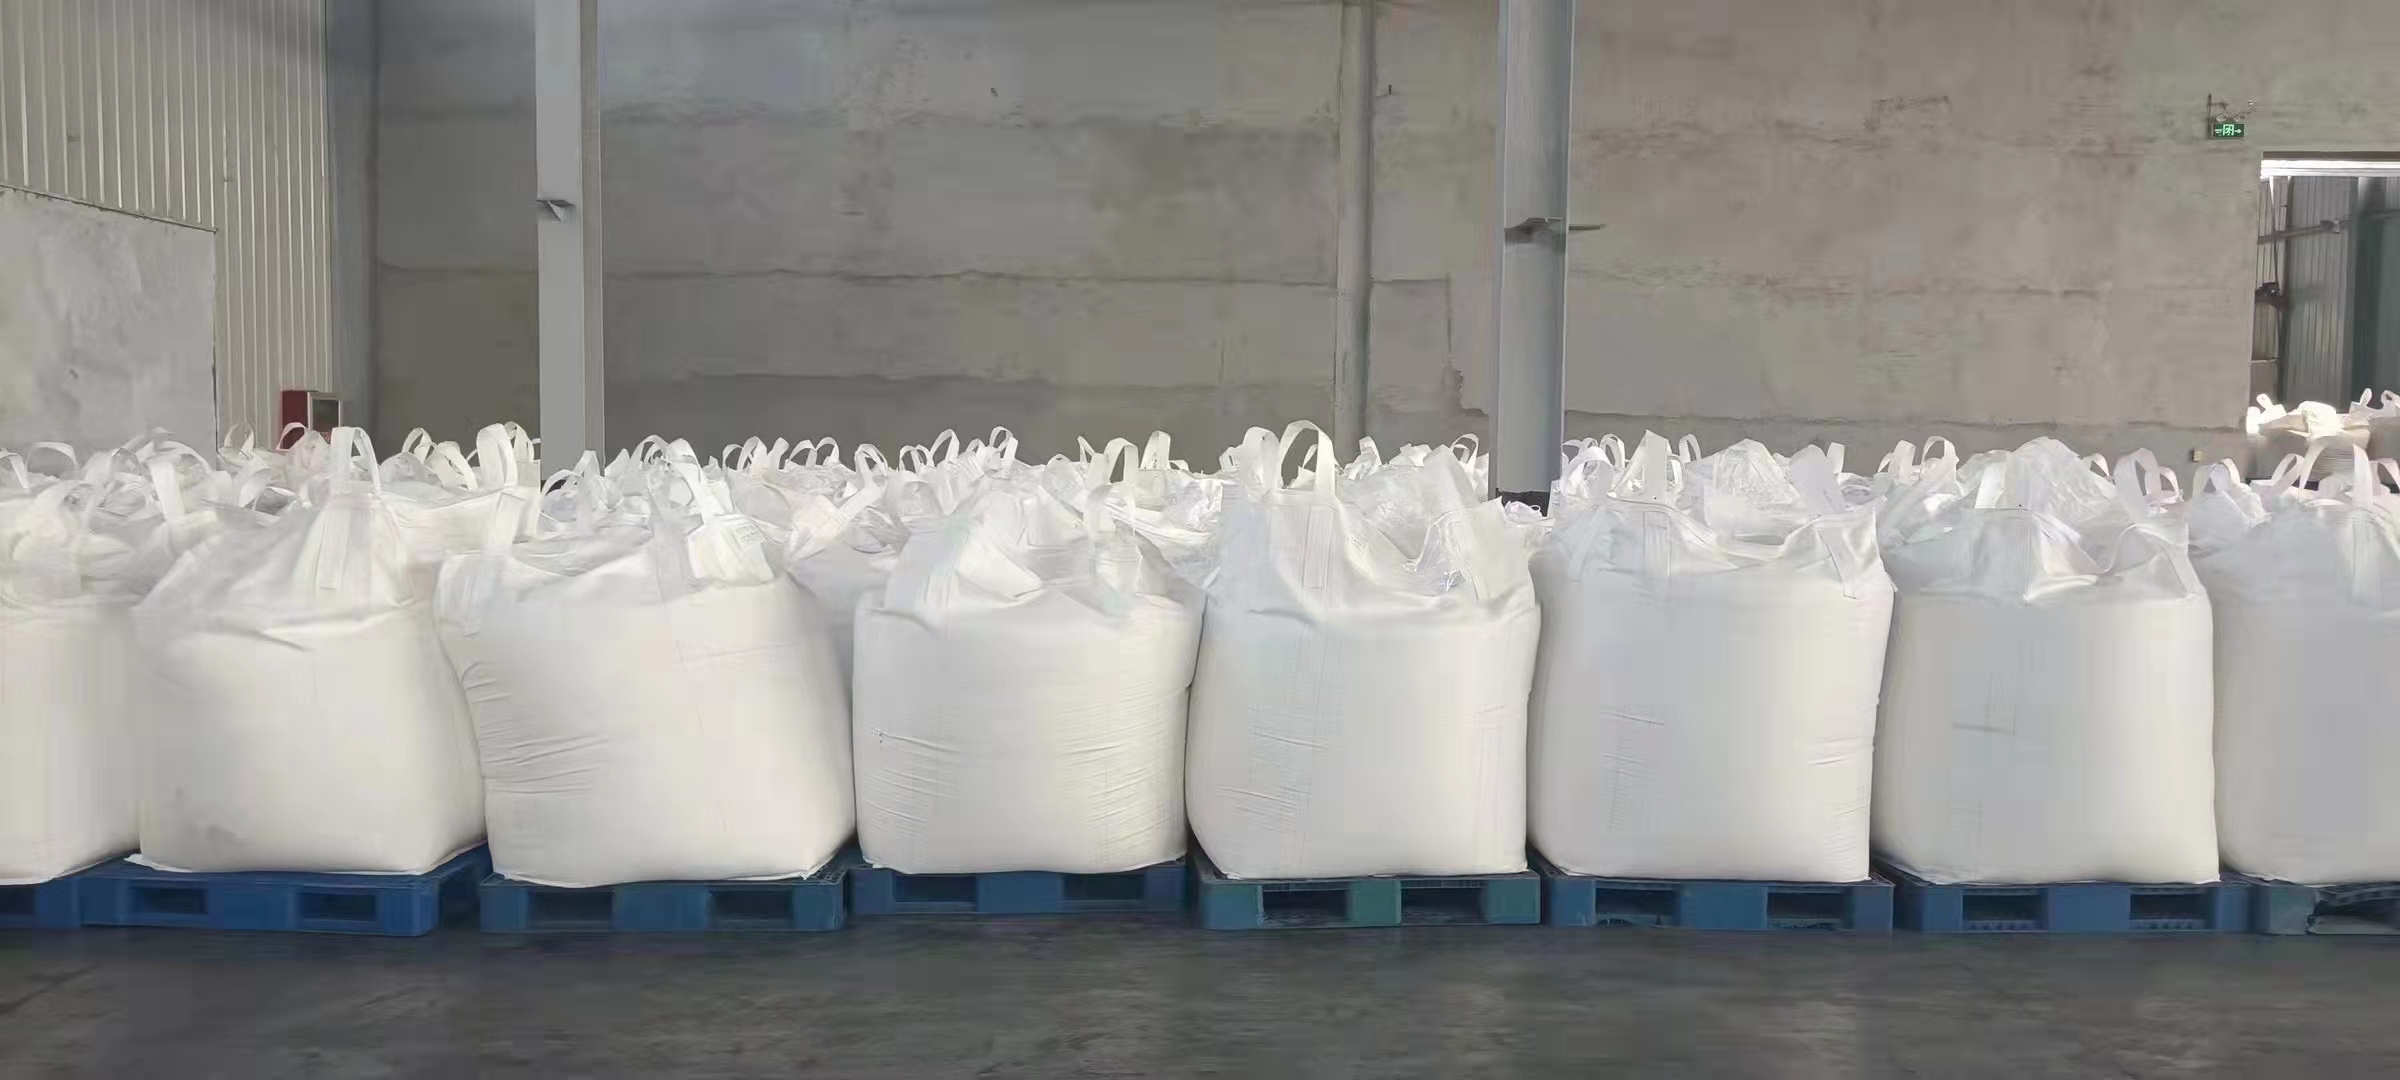 聚丙烯酸钠产品批发大量供应 聚丙烯酸钠产品供应